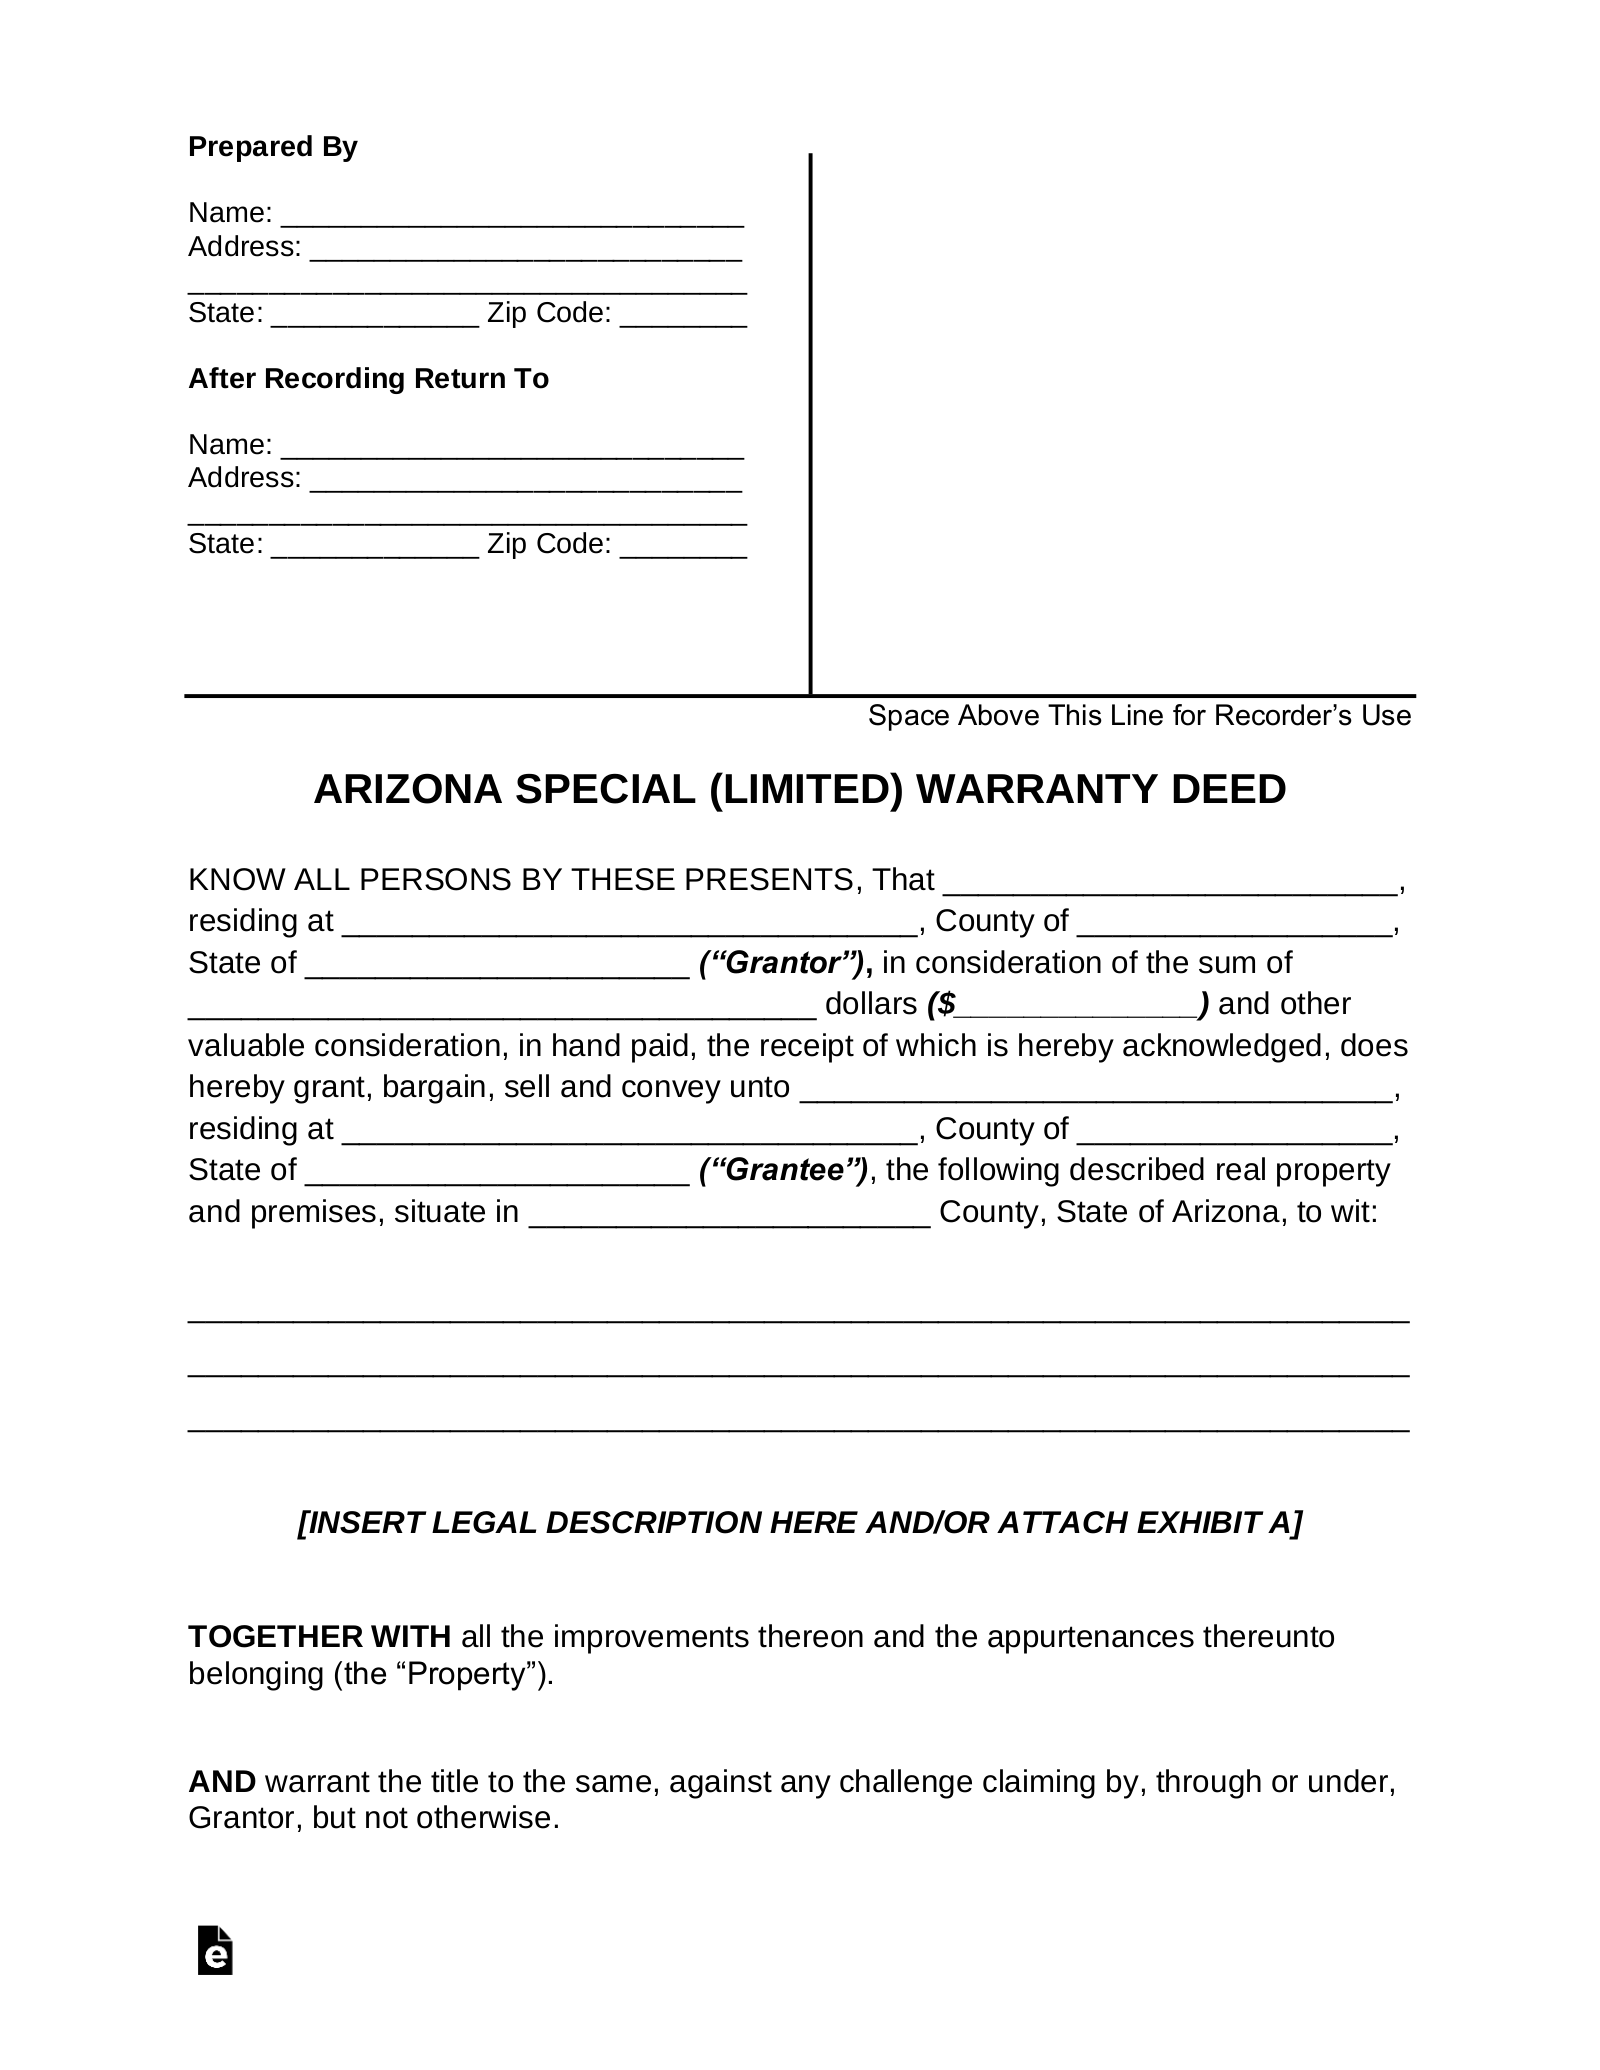 Arizona Special Warranty Deed Form